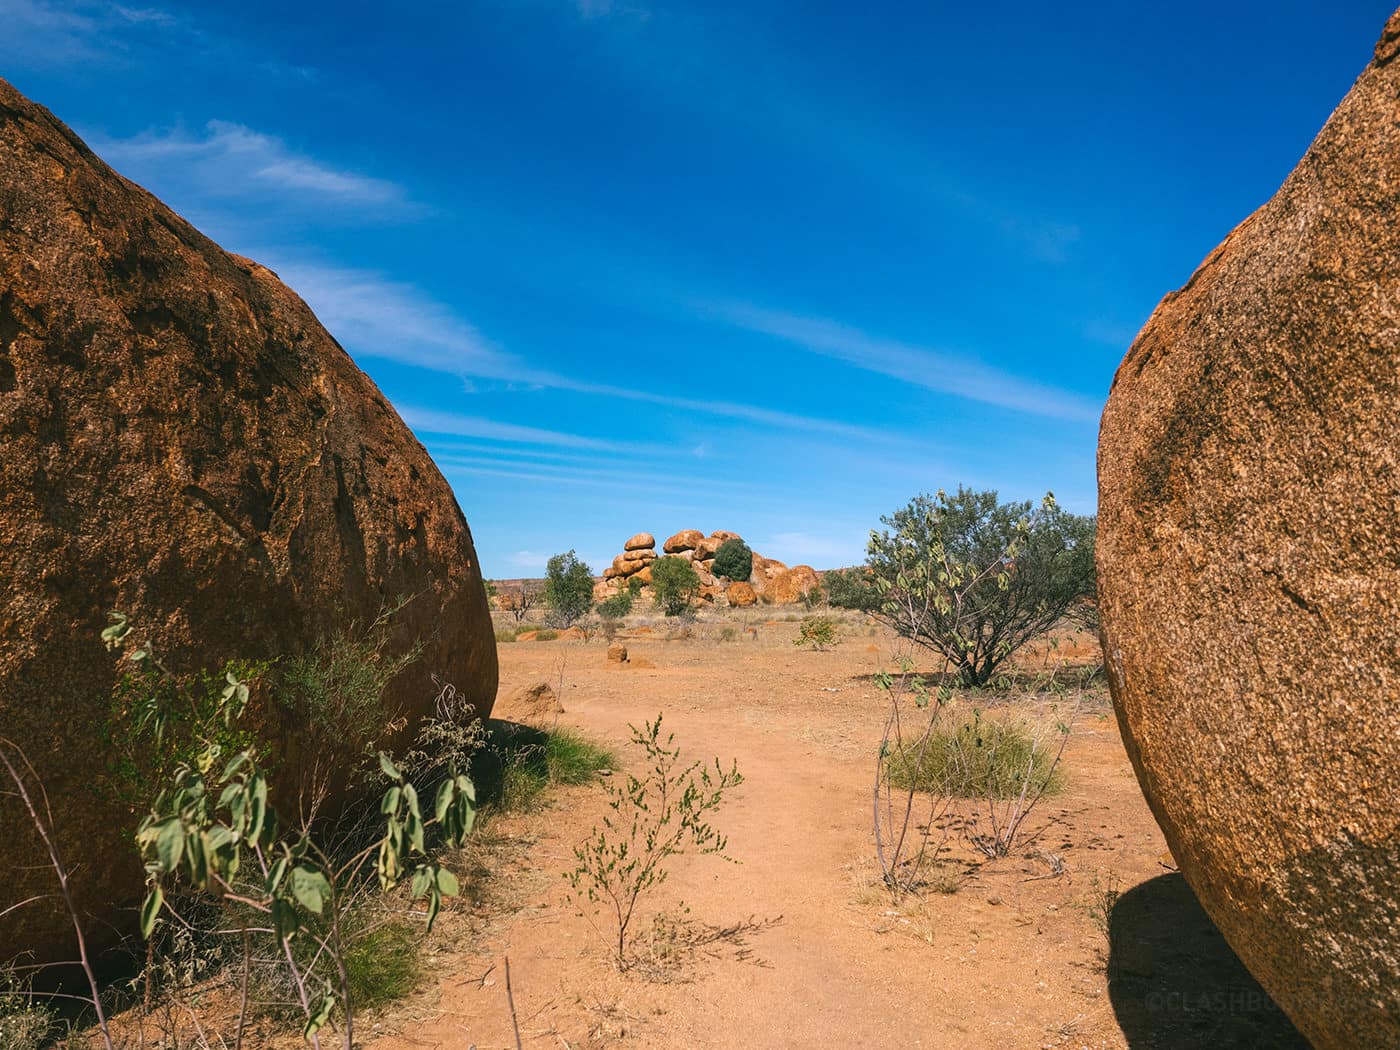 NT Australia - Karlu Karlu - Stack of boulders peeping through 2 huge boulders